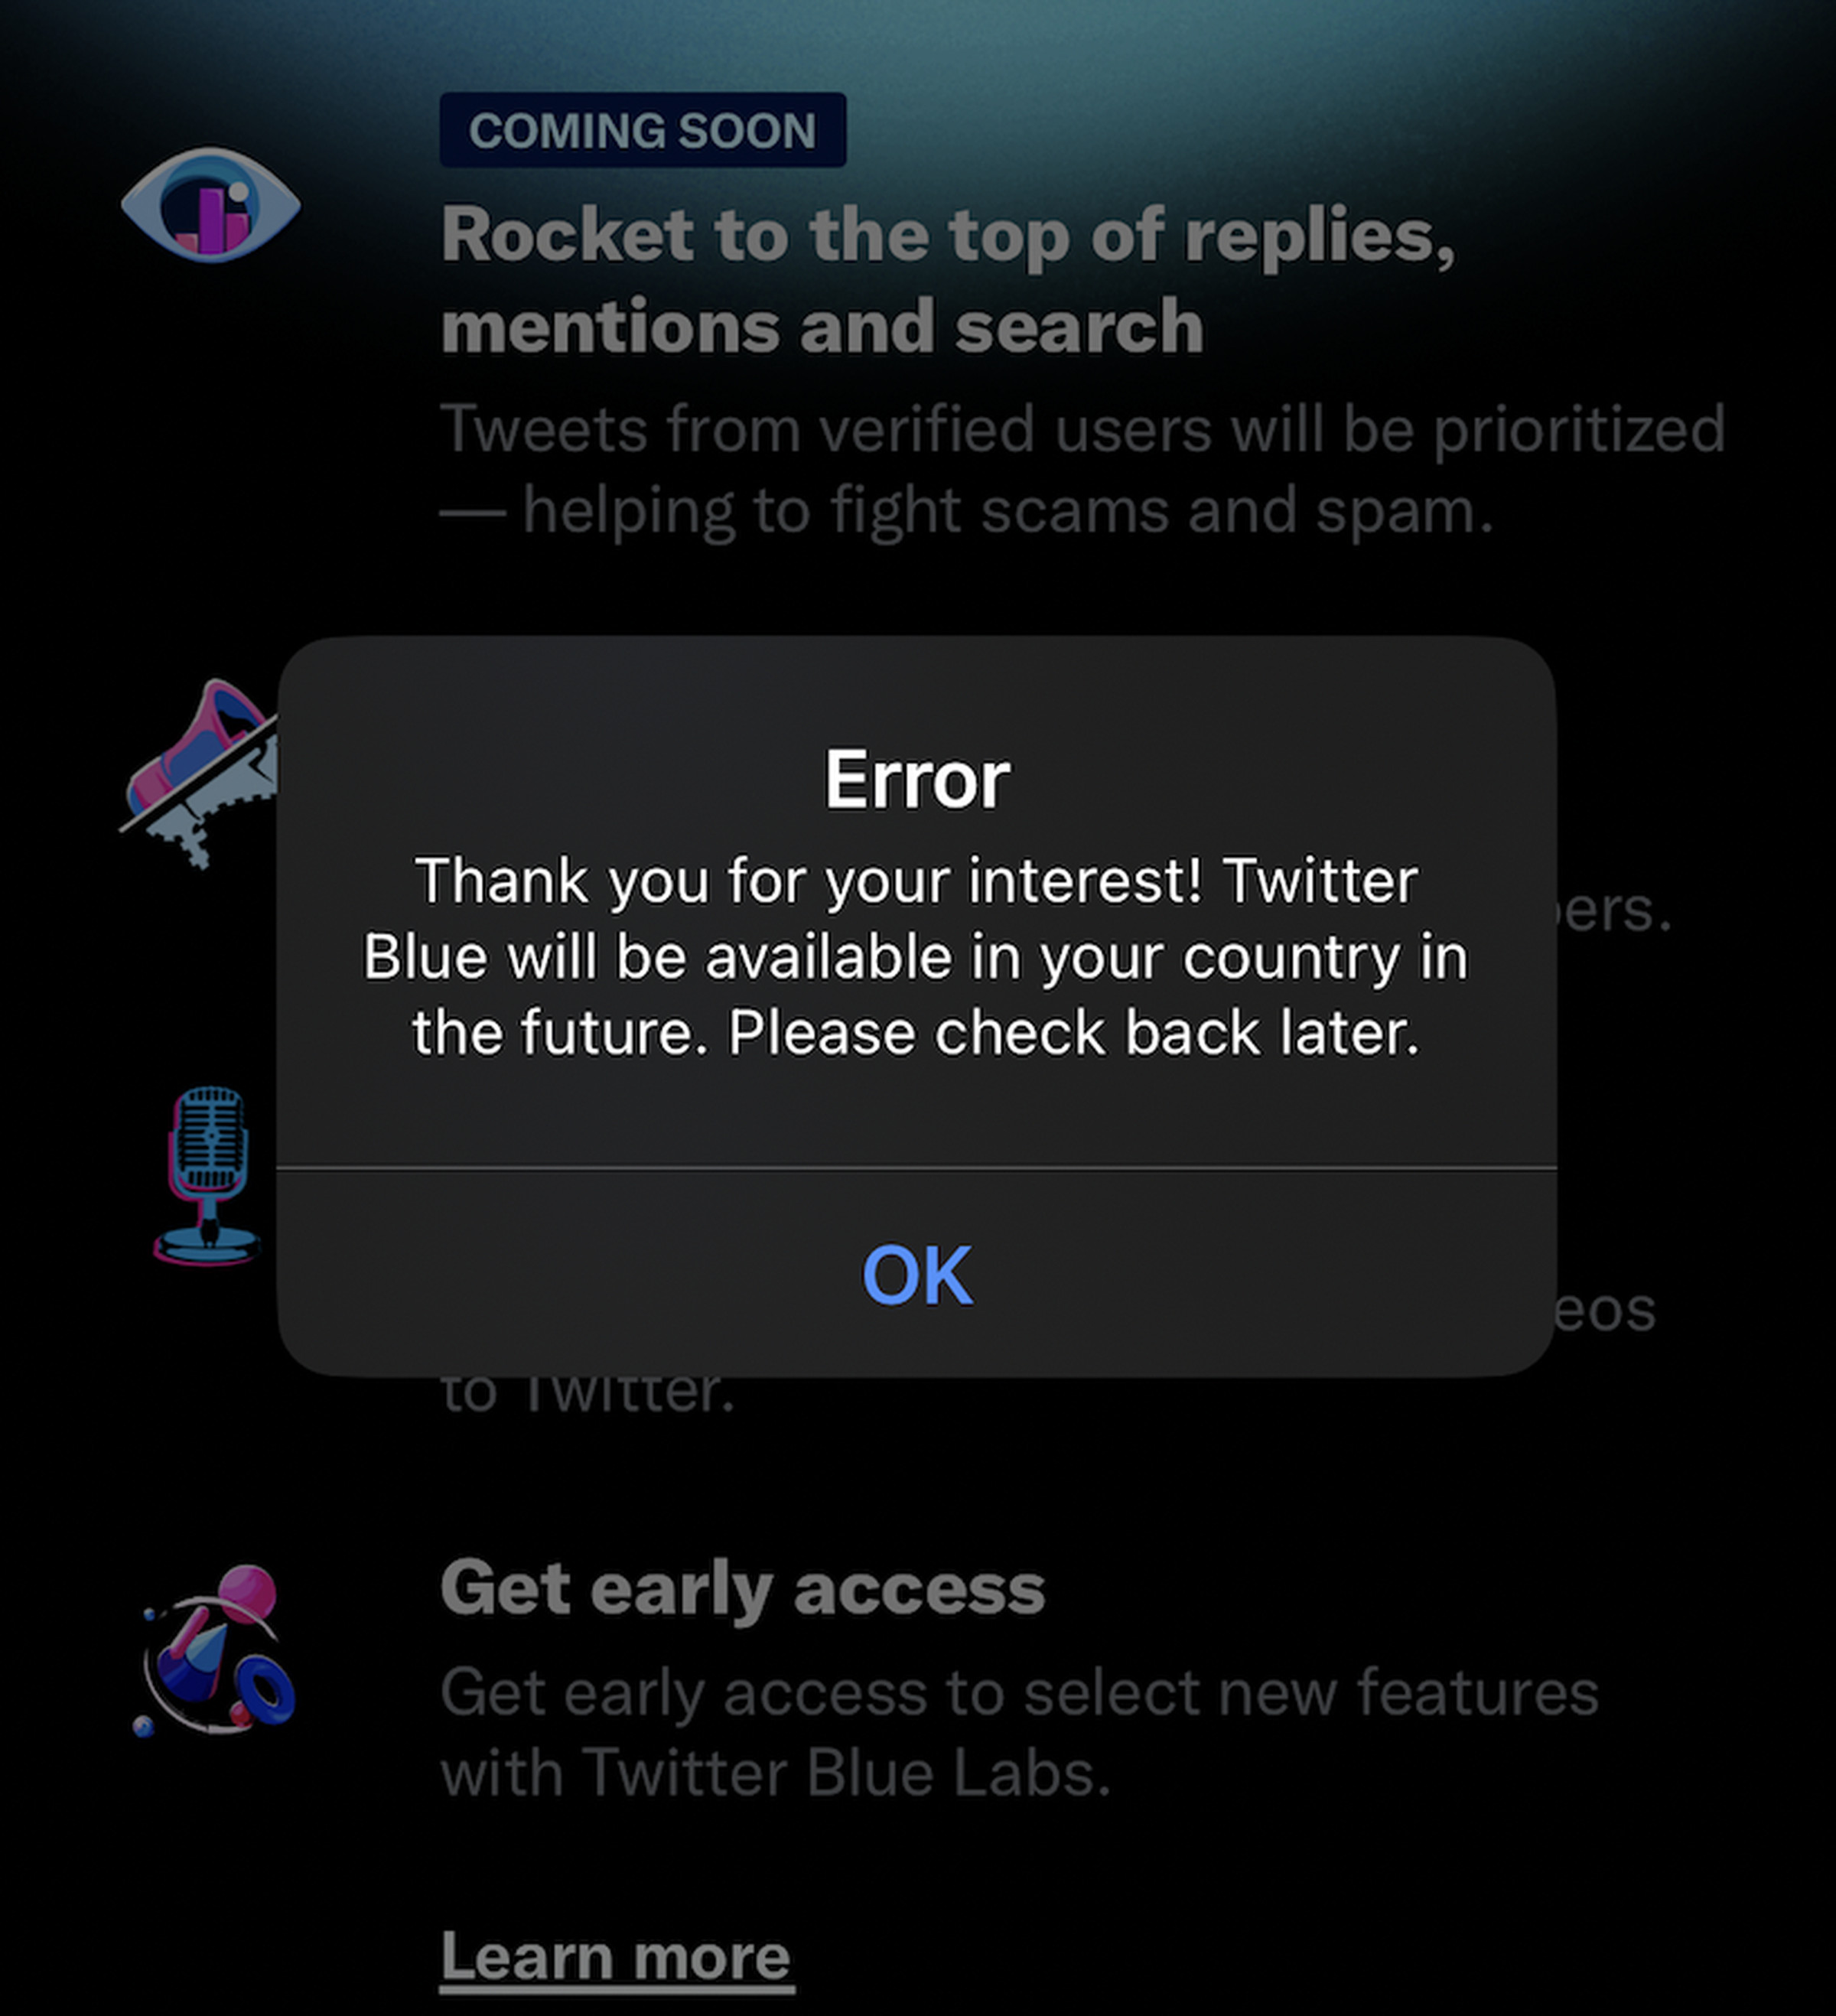 Bu sabah İngiltere'de Twitter Blue'ya kaydolmaya çalışırken, 11 Kasım Cuma, yalnızca bir hata mesajı döndürdü.